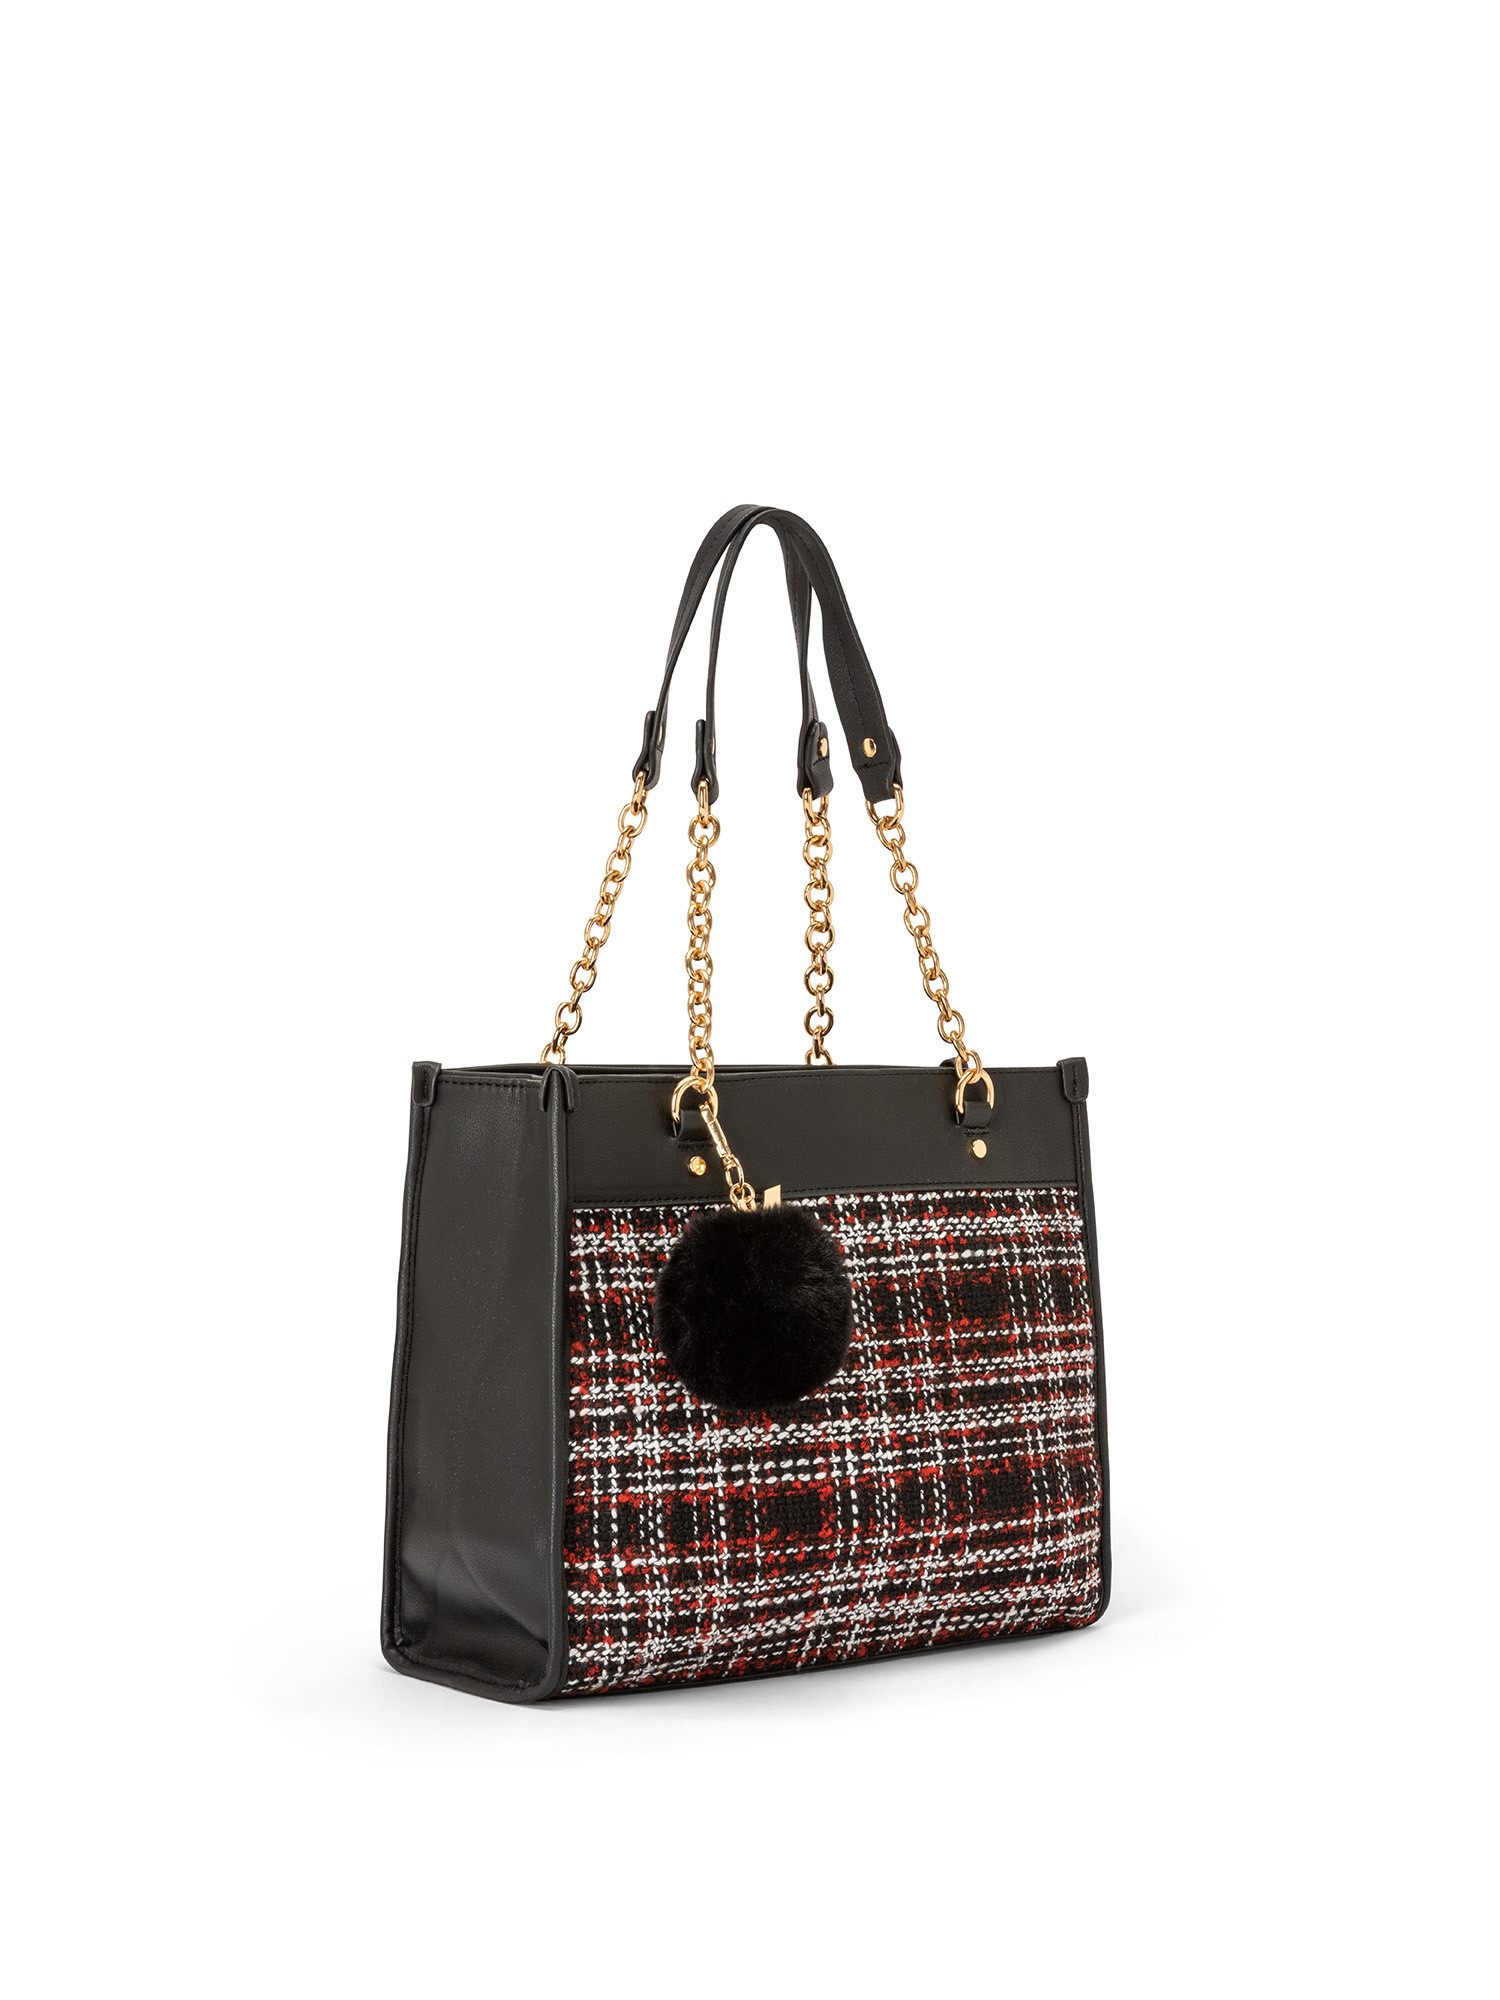 Koan - Shopping bag piccola con inserto scozzese, Nero, large image number 1